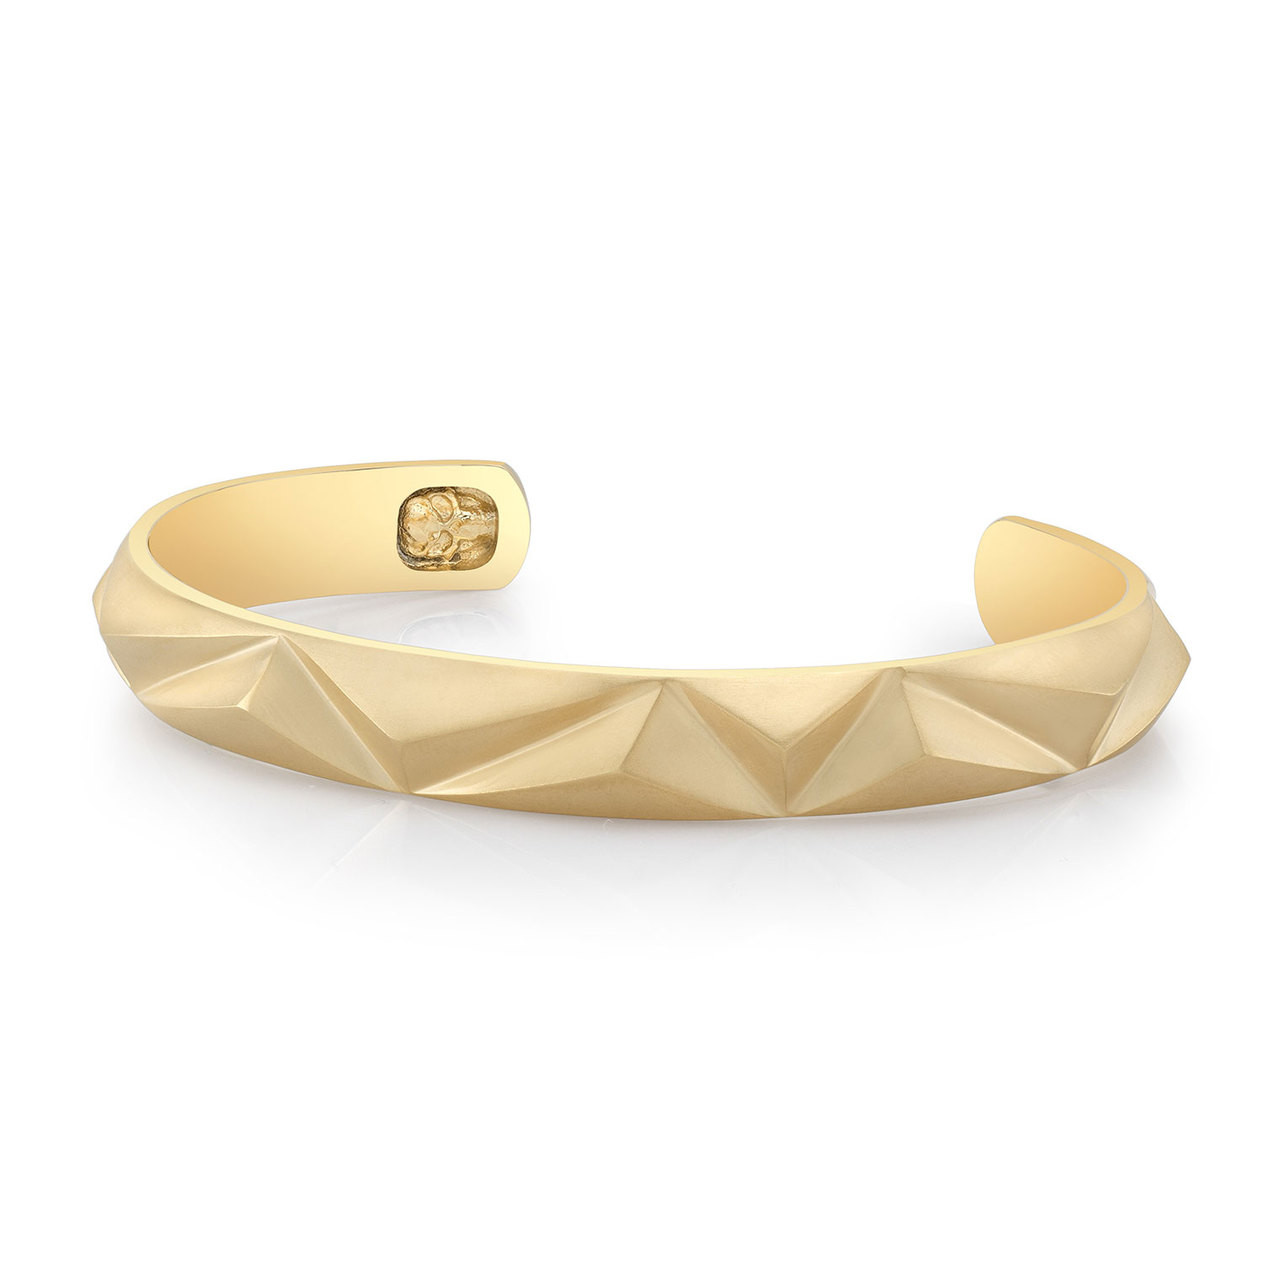 Open bracelet Pyramid cuff bracelet made in solid gold Rose pyramid bracelet Gold cuff bangle, Pyramid shaped Pyramid bangle bracelet